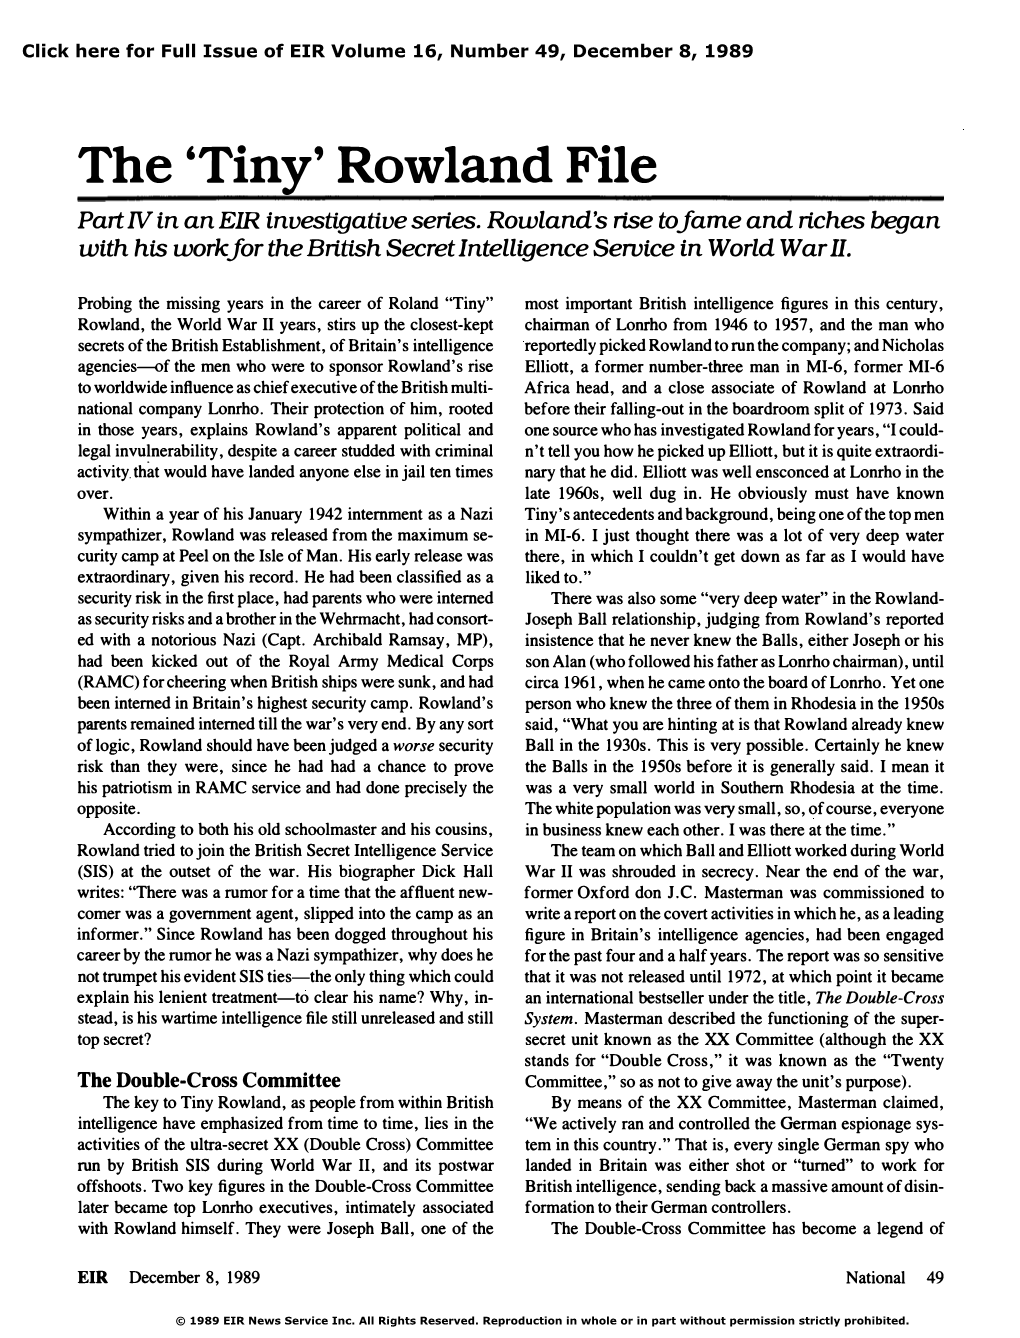 The 'Tiny' Rowland File